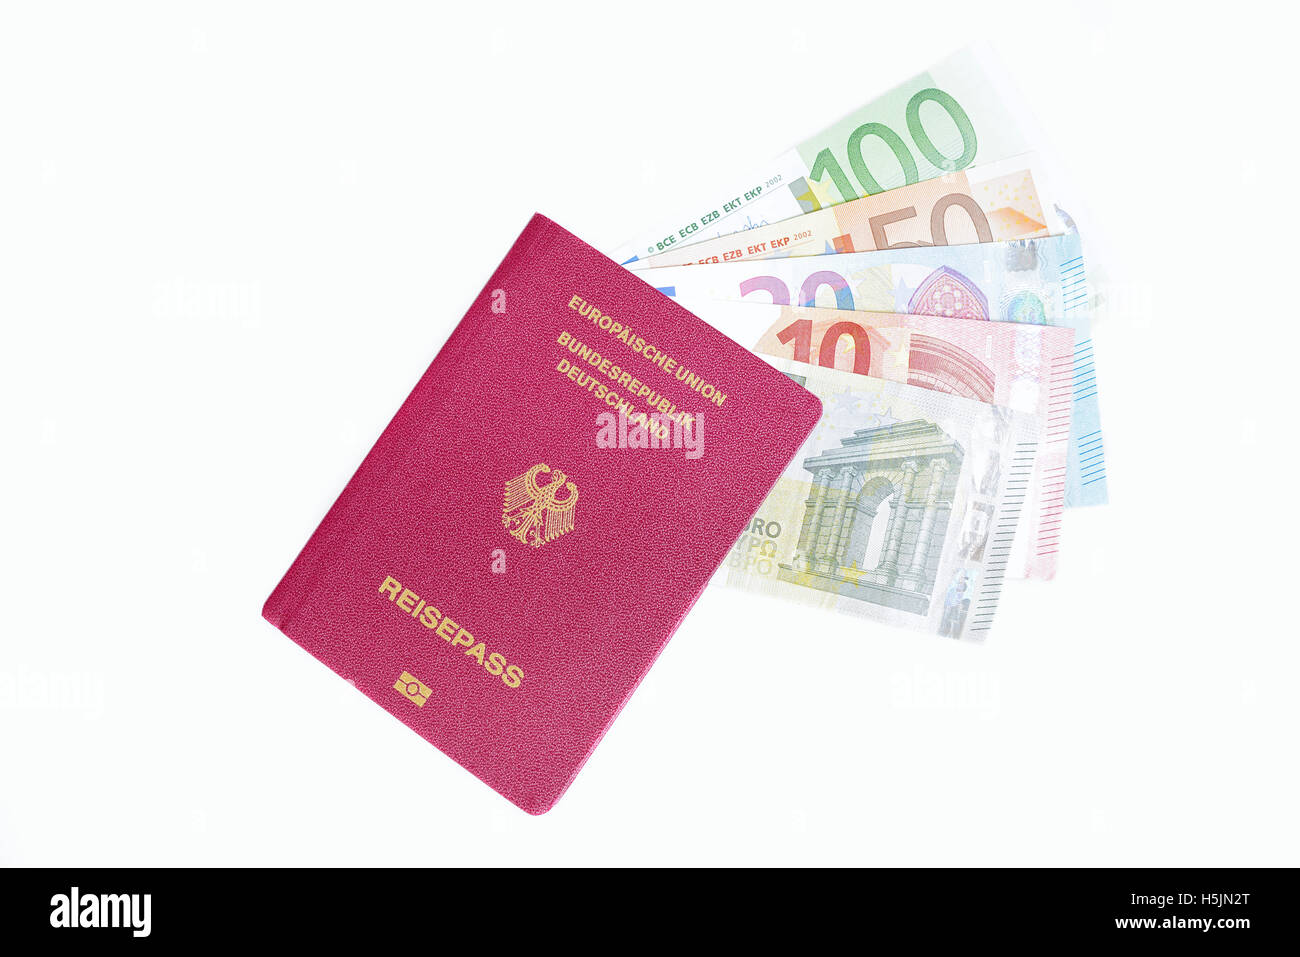 German Passport and Euro bills Stock Photo